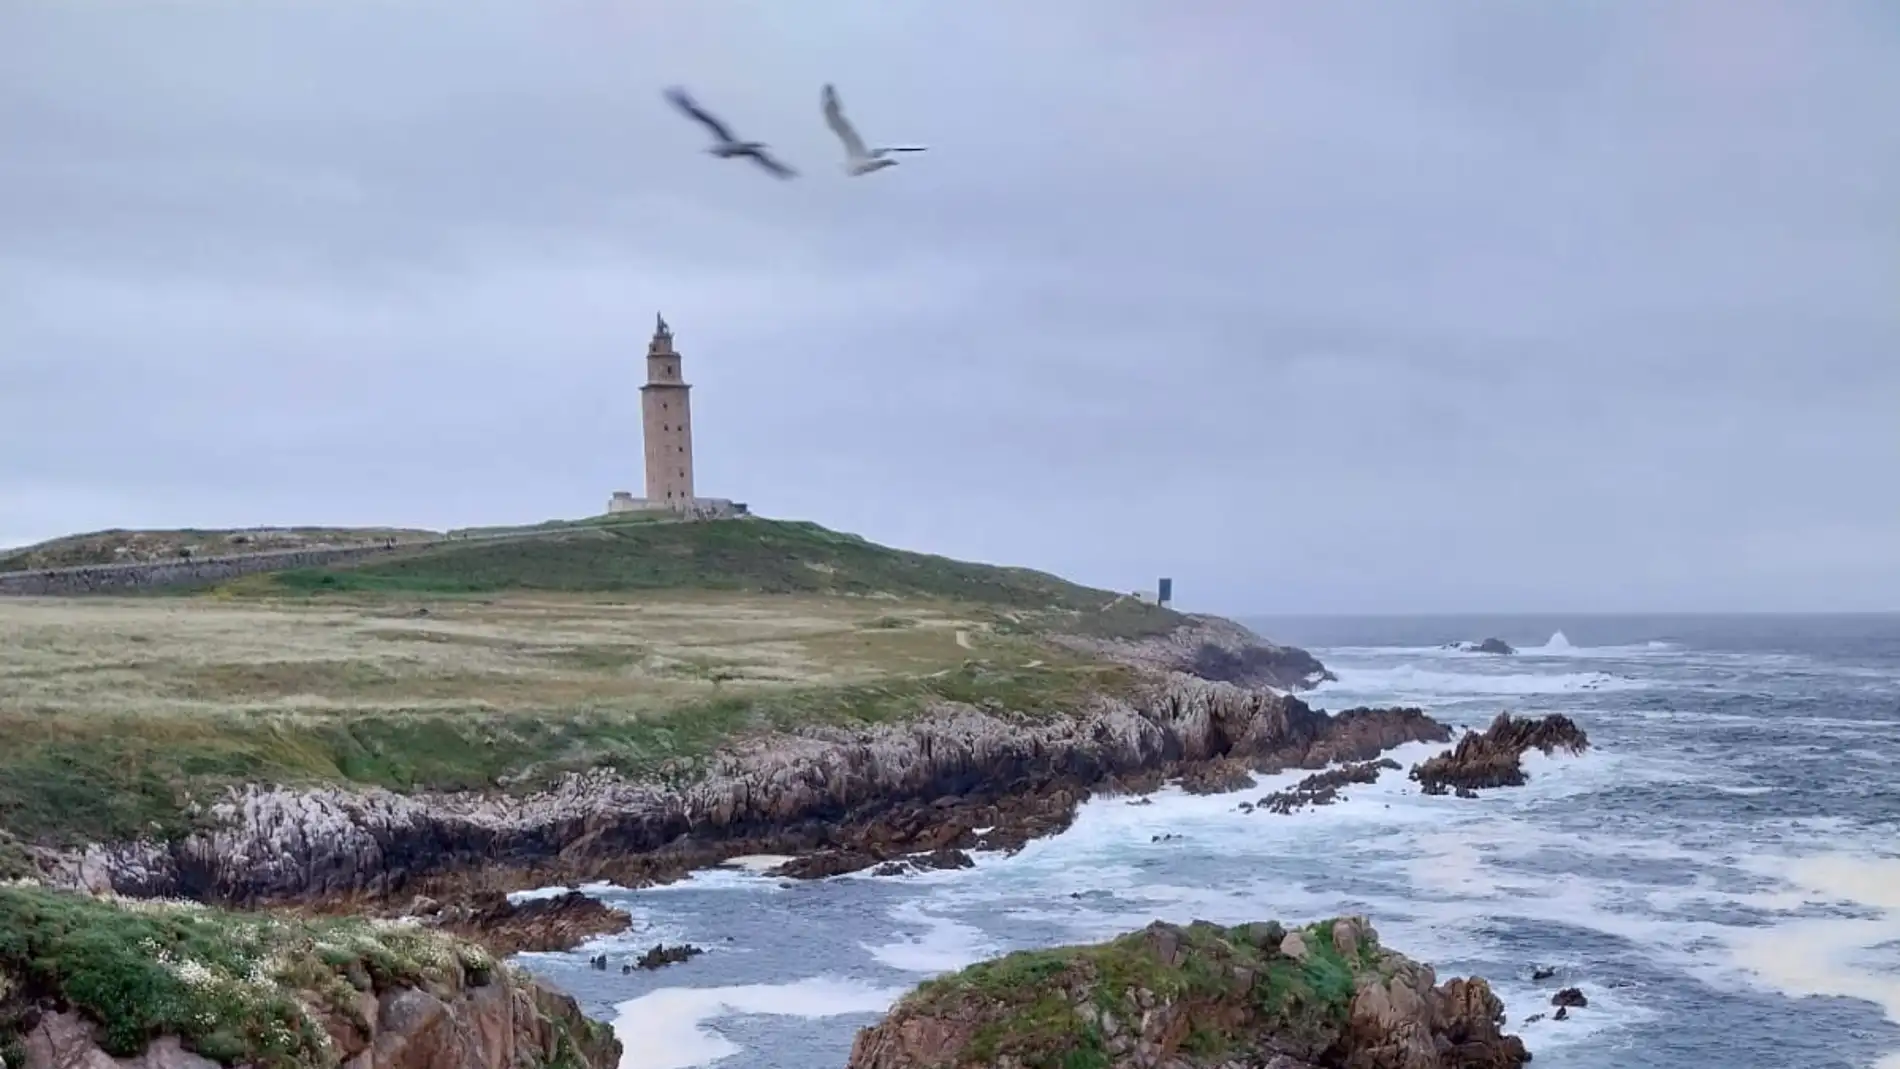  Programa especial de Gente viajera desde A Coruña: Una ciudad moderna con turismo de calidad